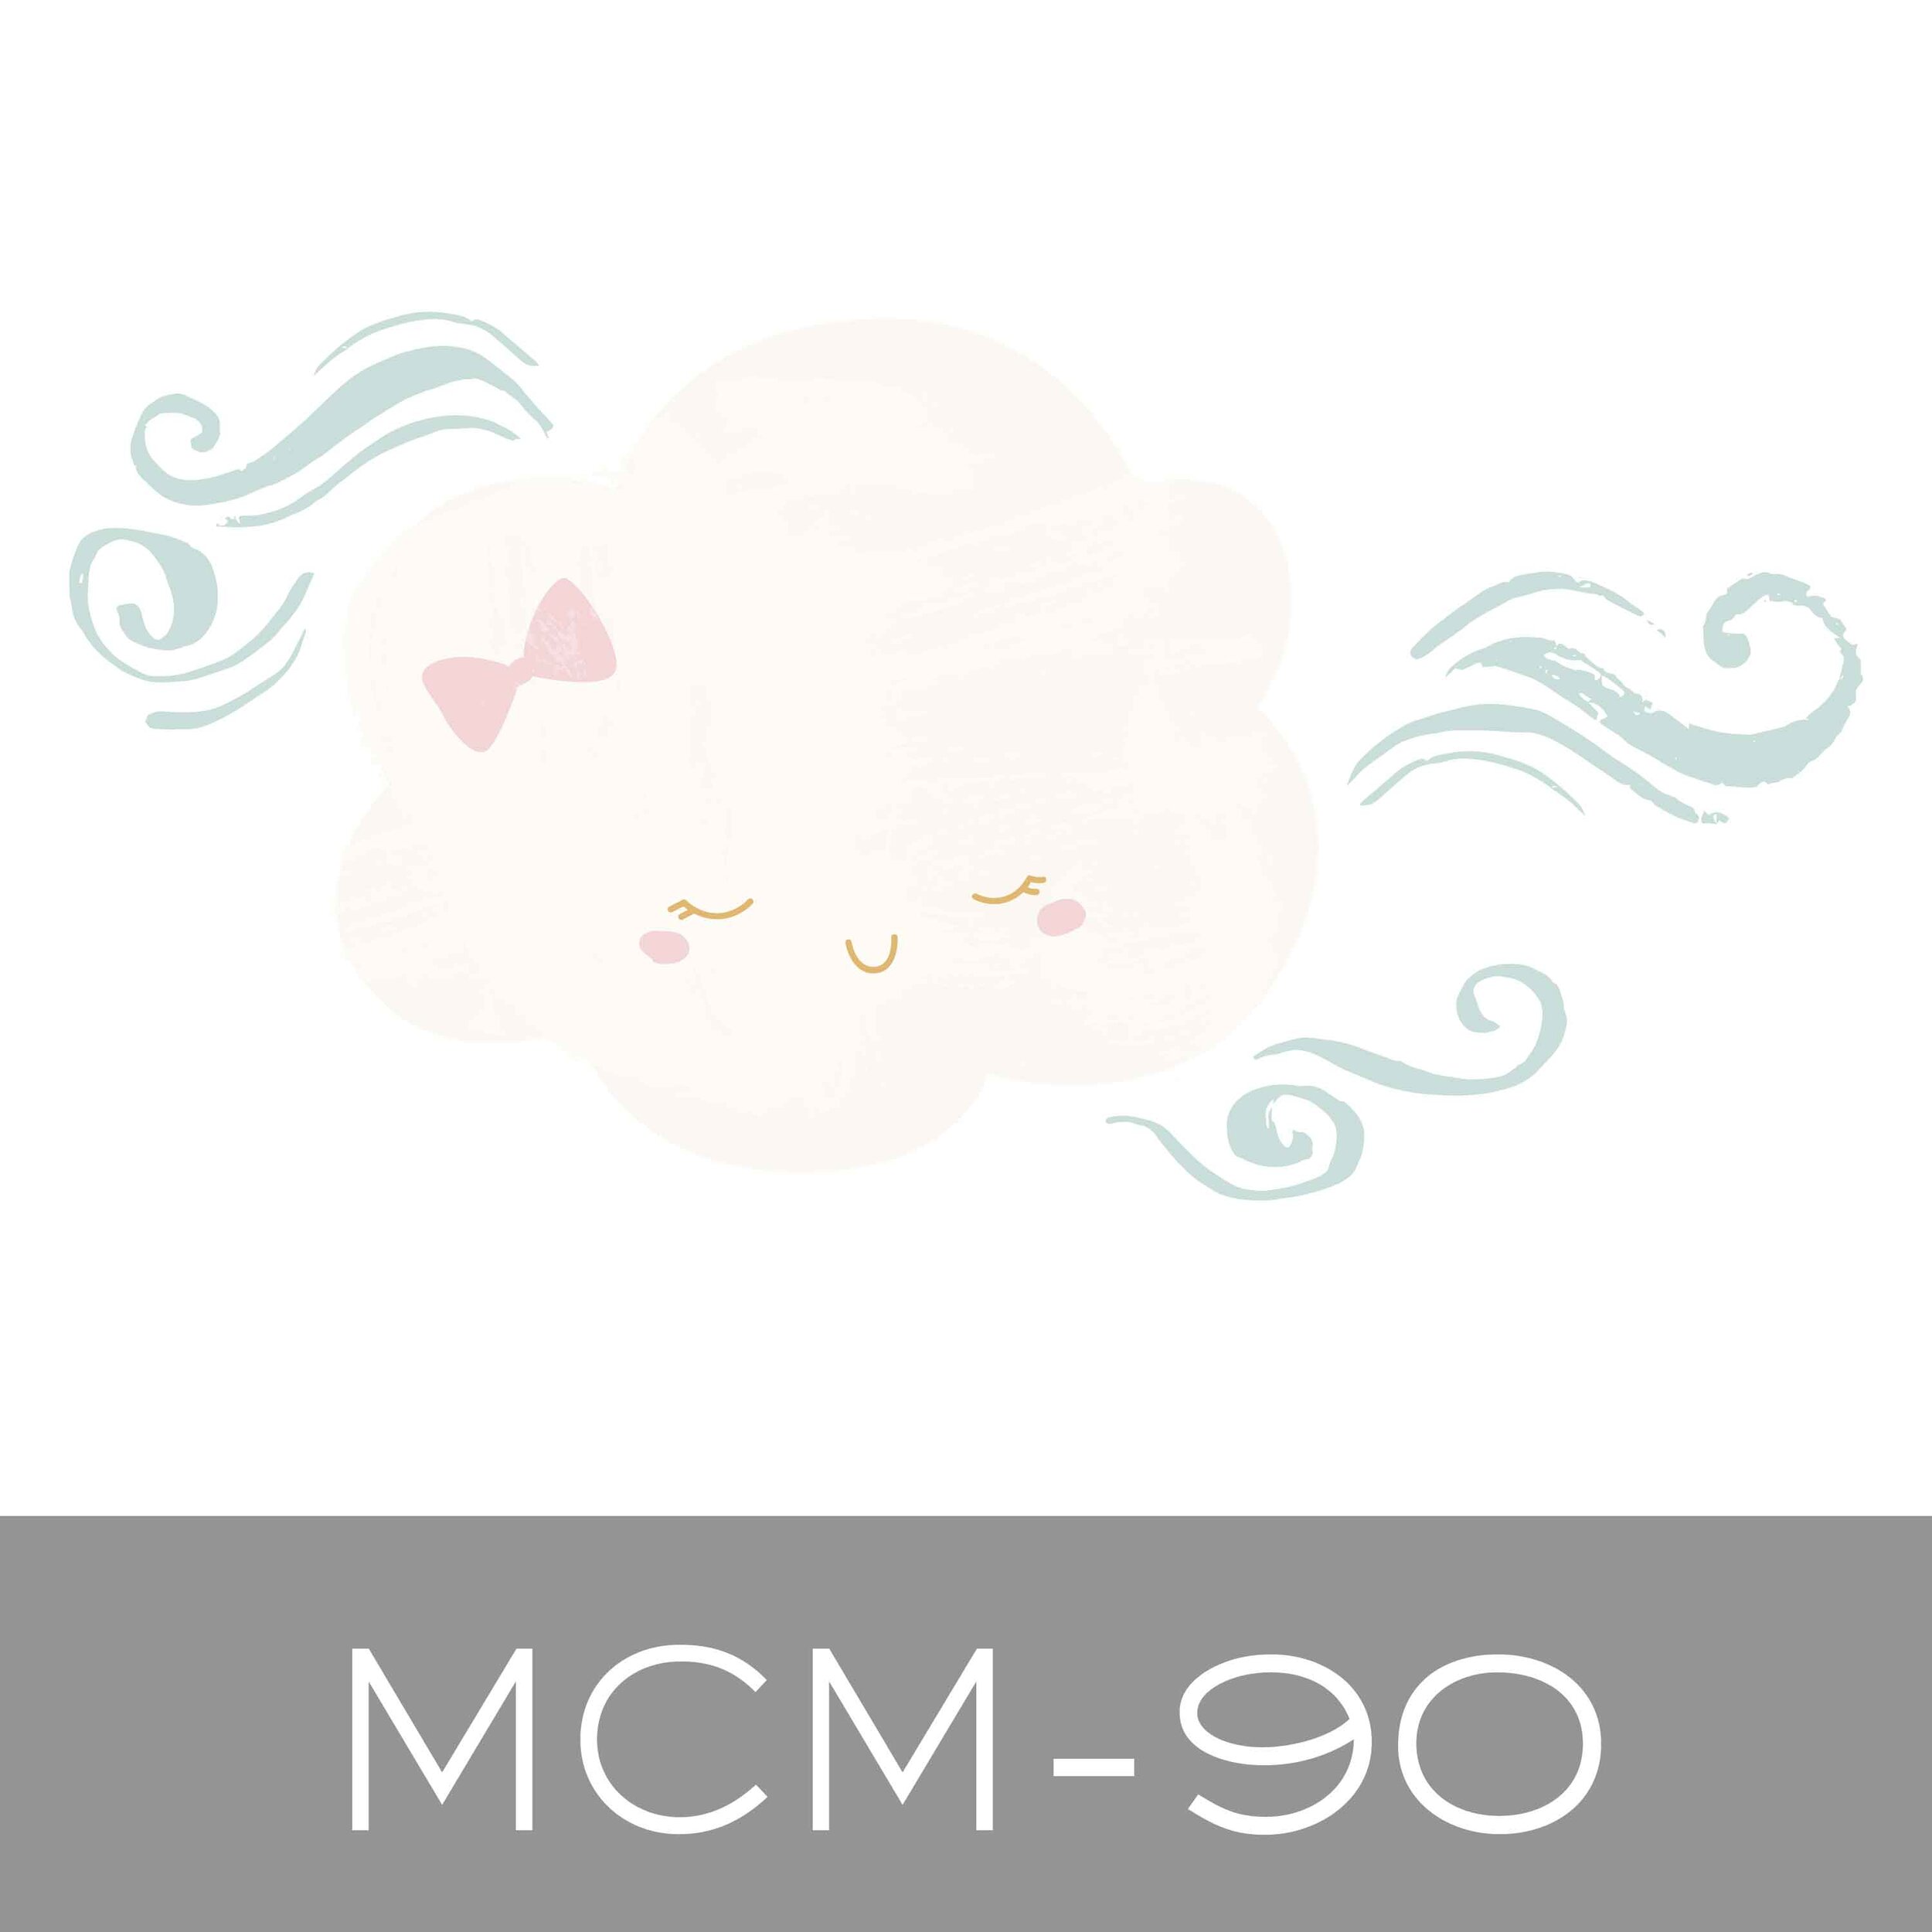 MCM-90.jpg